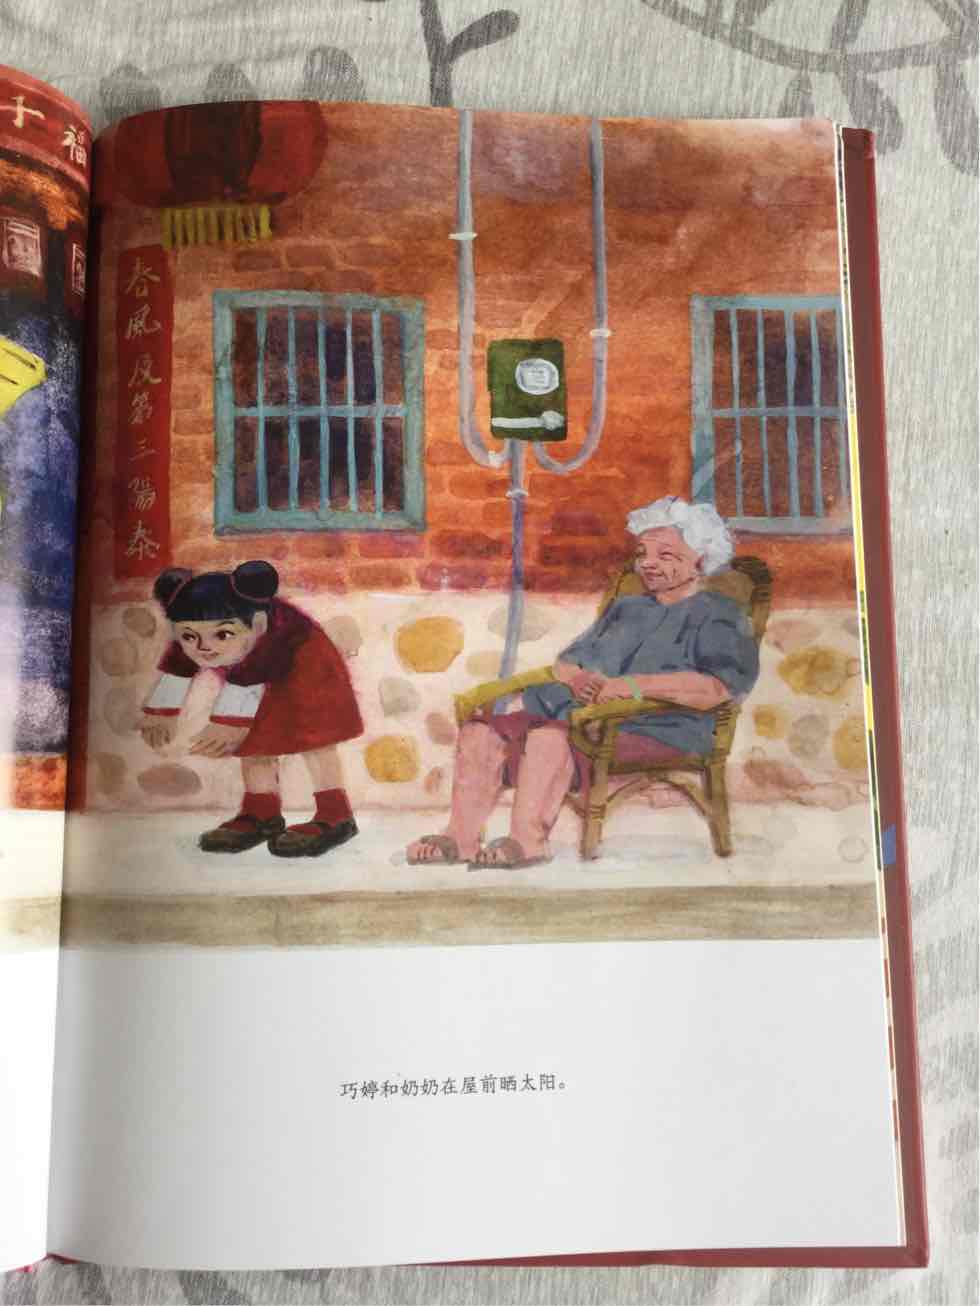 在幼儿园里学过这个儿歌，孩子就很好奇故事的内容，传统中国风的感觉。